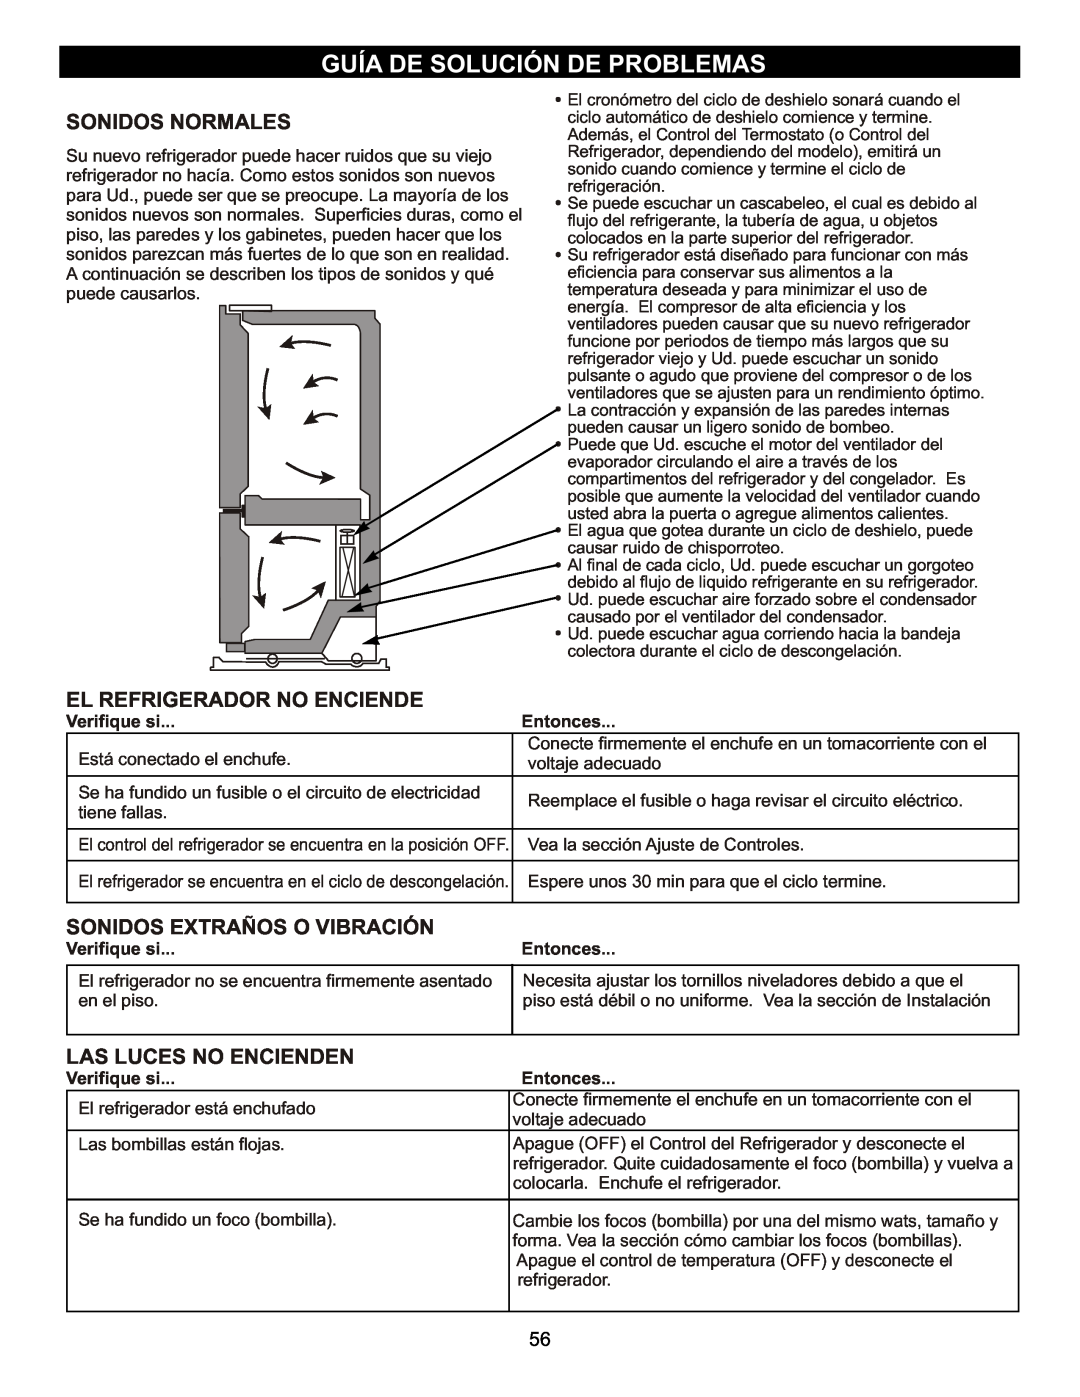 LG Electronics LFC23760 Guía De Solución De Problemas, El Refrigerador No Enciende, Sonidos Extraños O Vibración, Entonces 